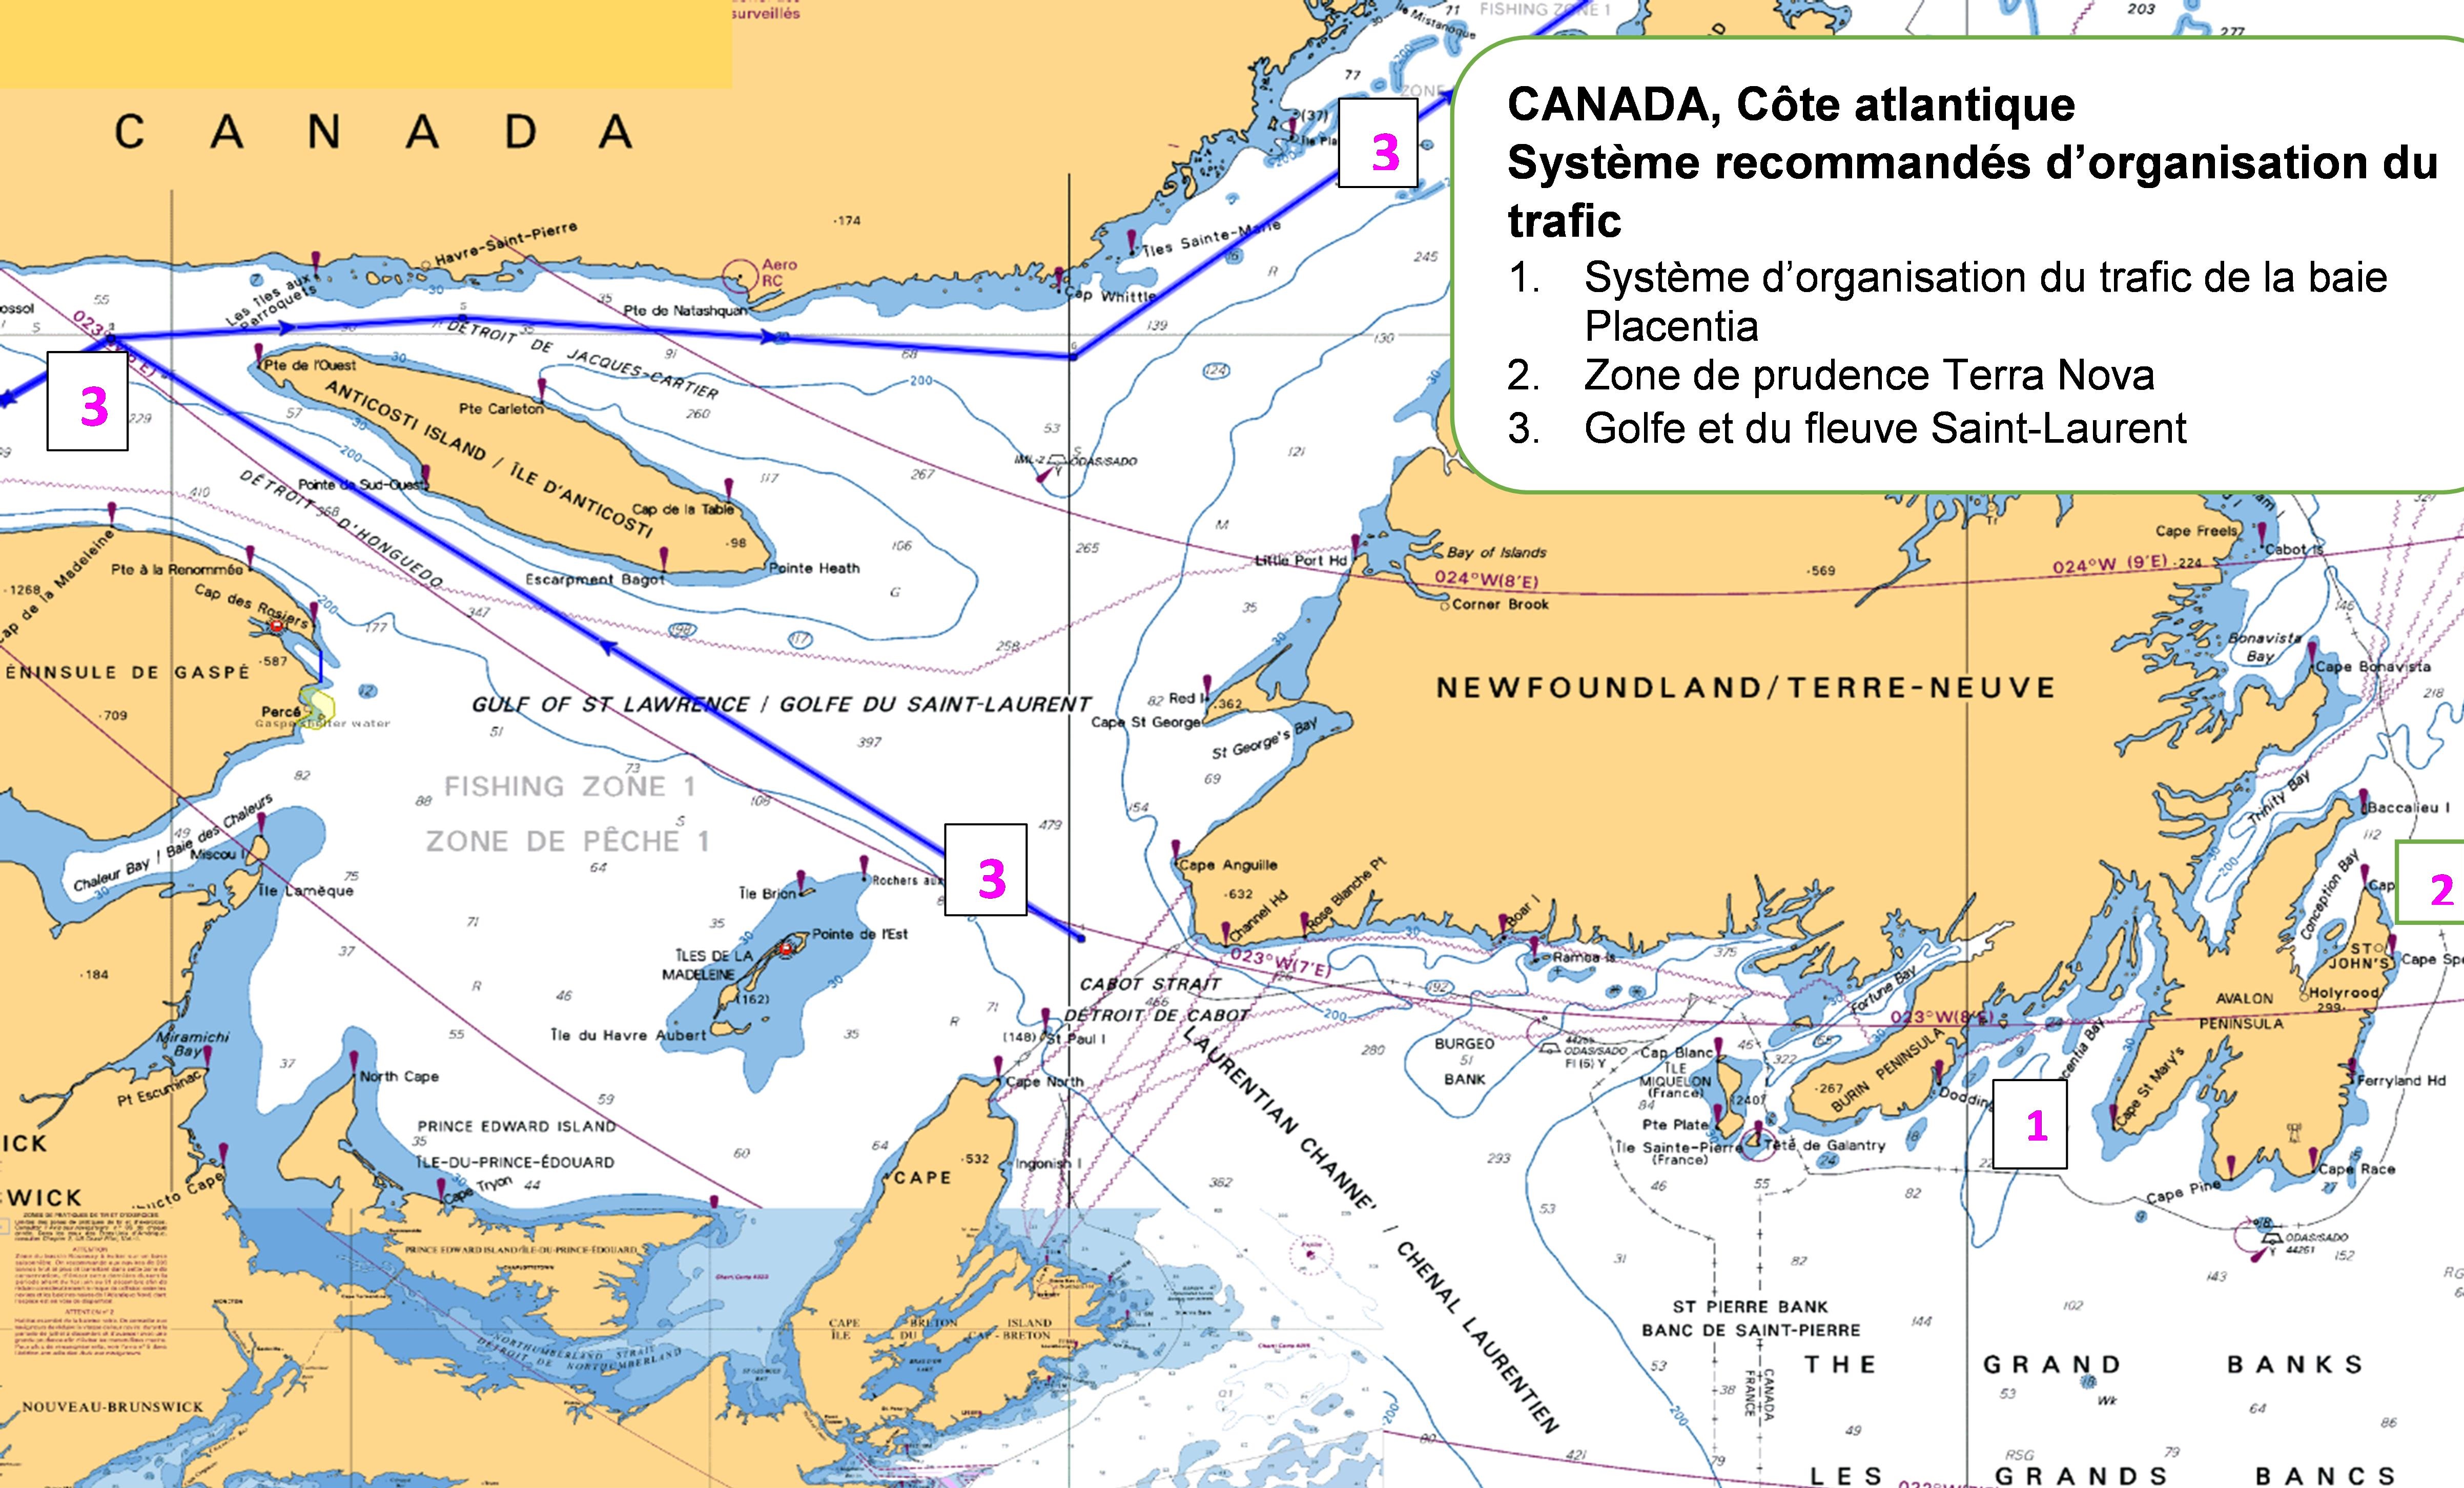 Systèmes d'itinéraires canadiens recommandés – Côte atlantique